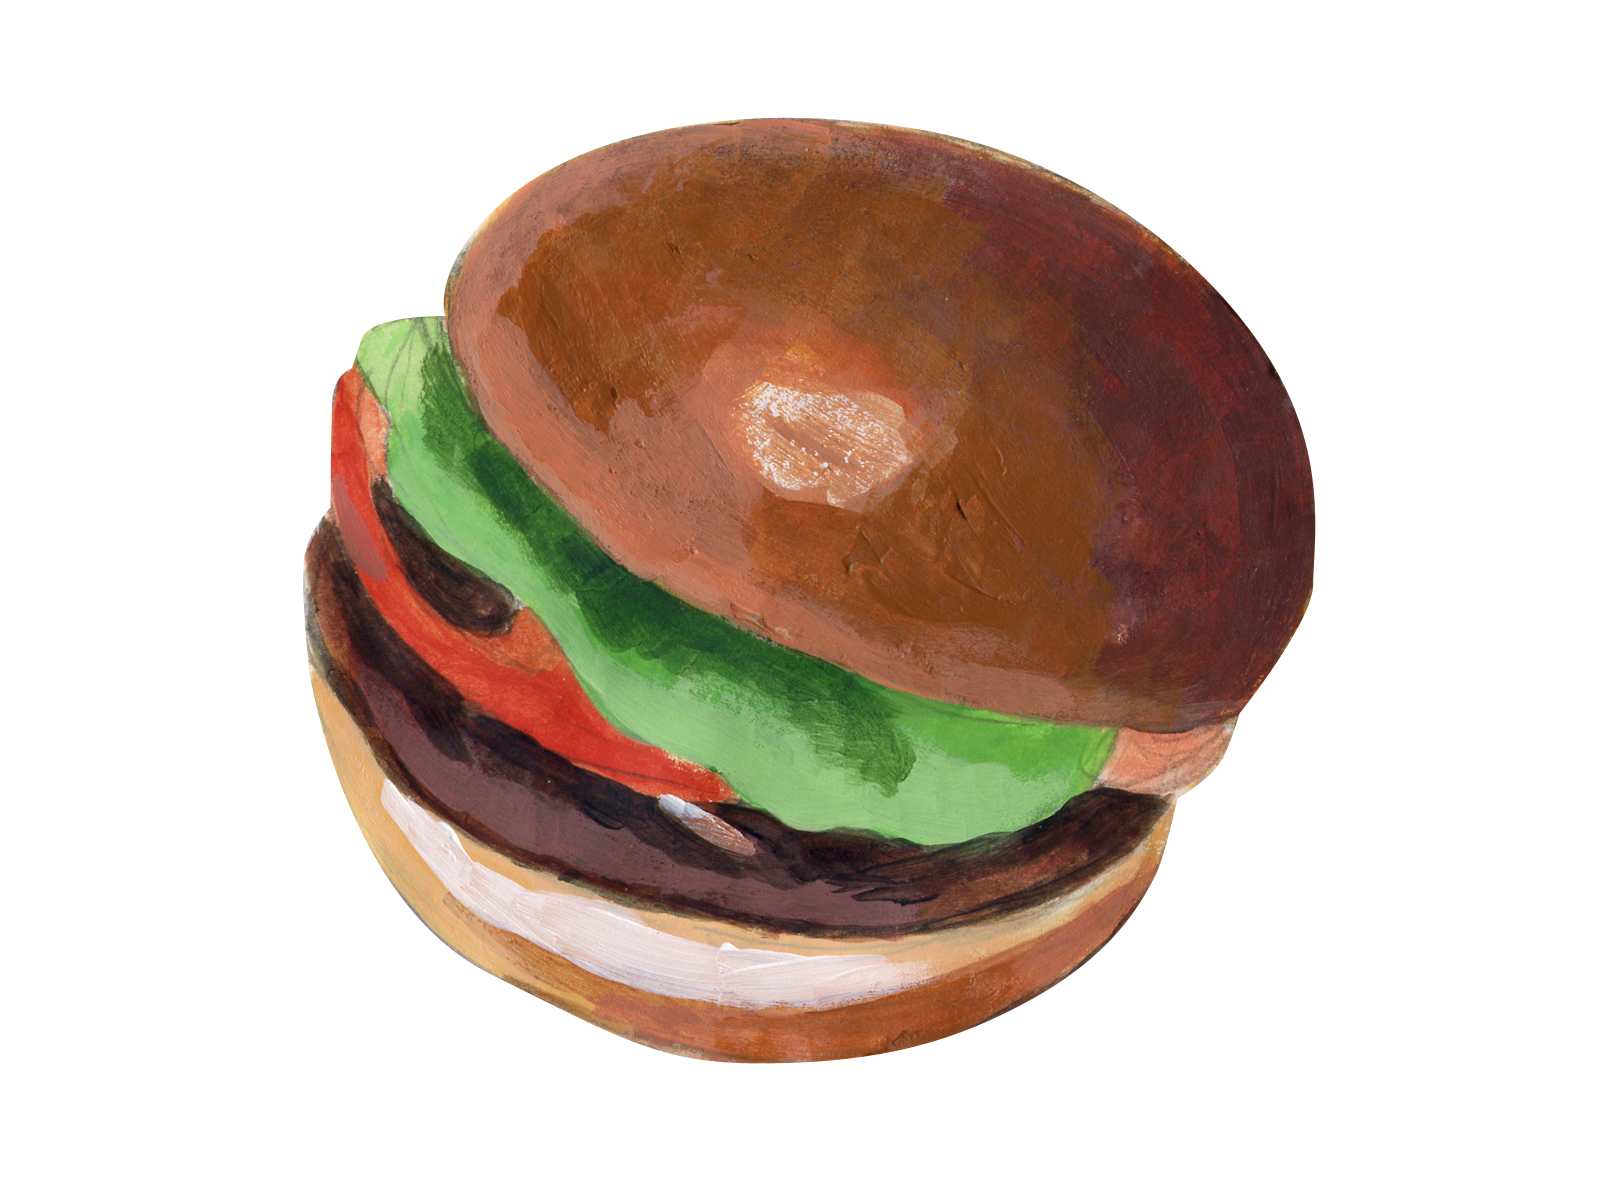 ハンバーガーのイラスト